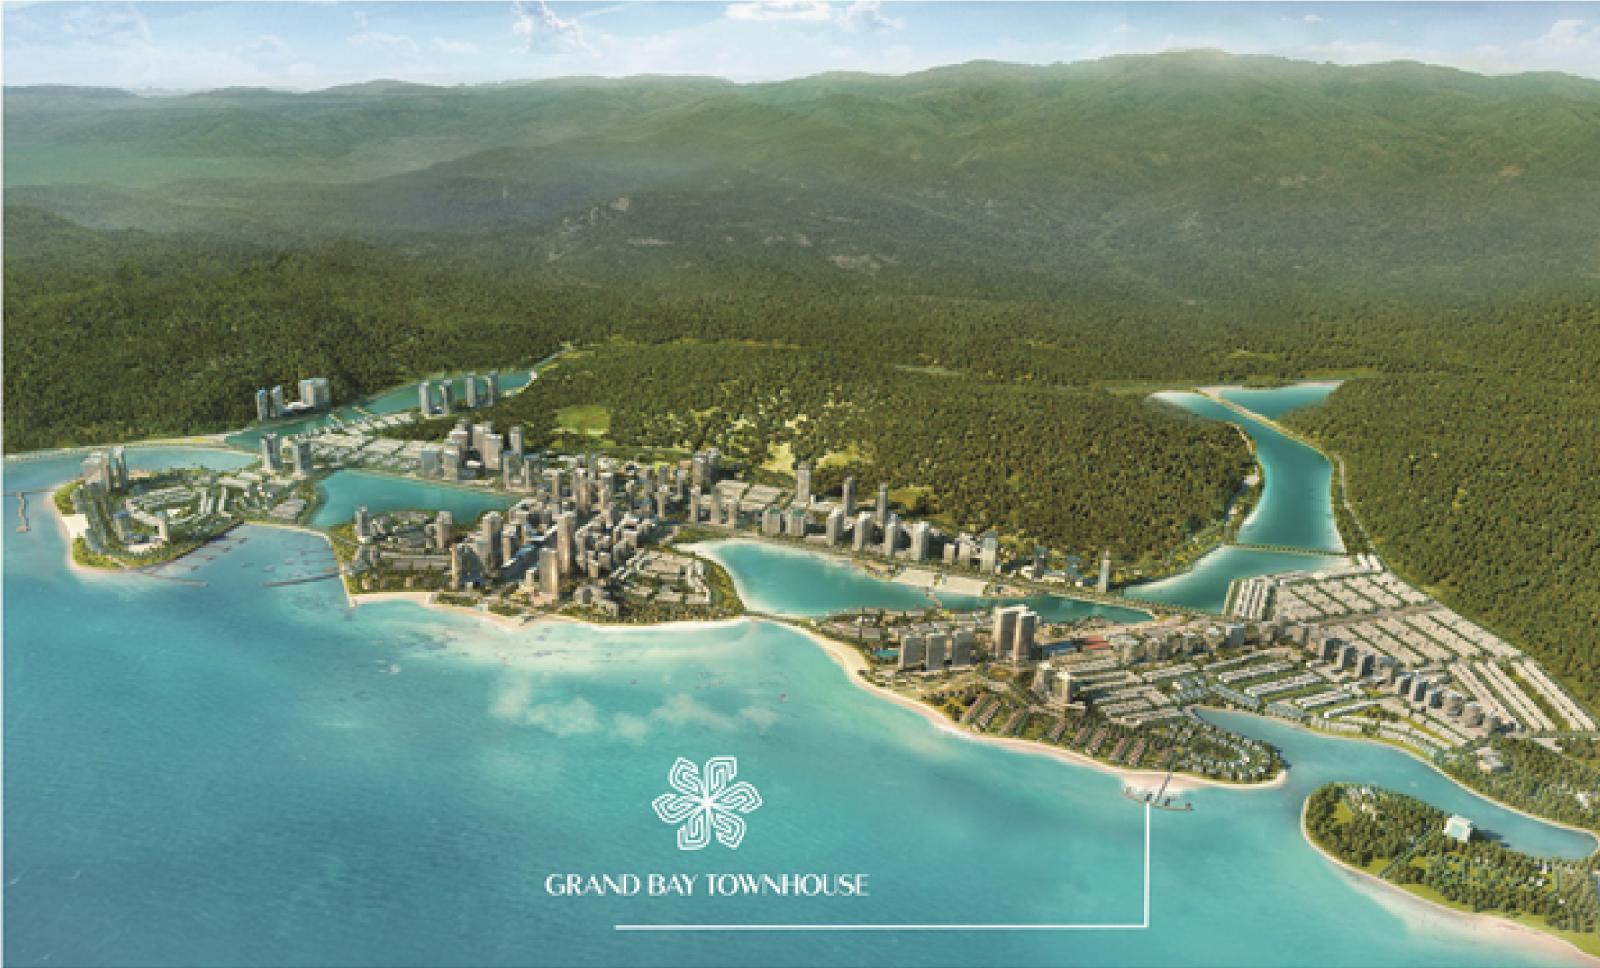 Grand Bay Townhouse - điểm đến mơ ước của hàng triệu du khách